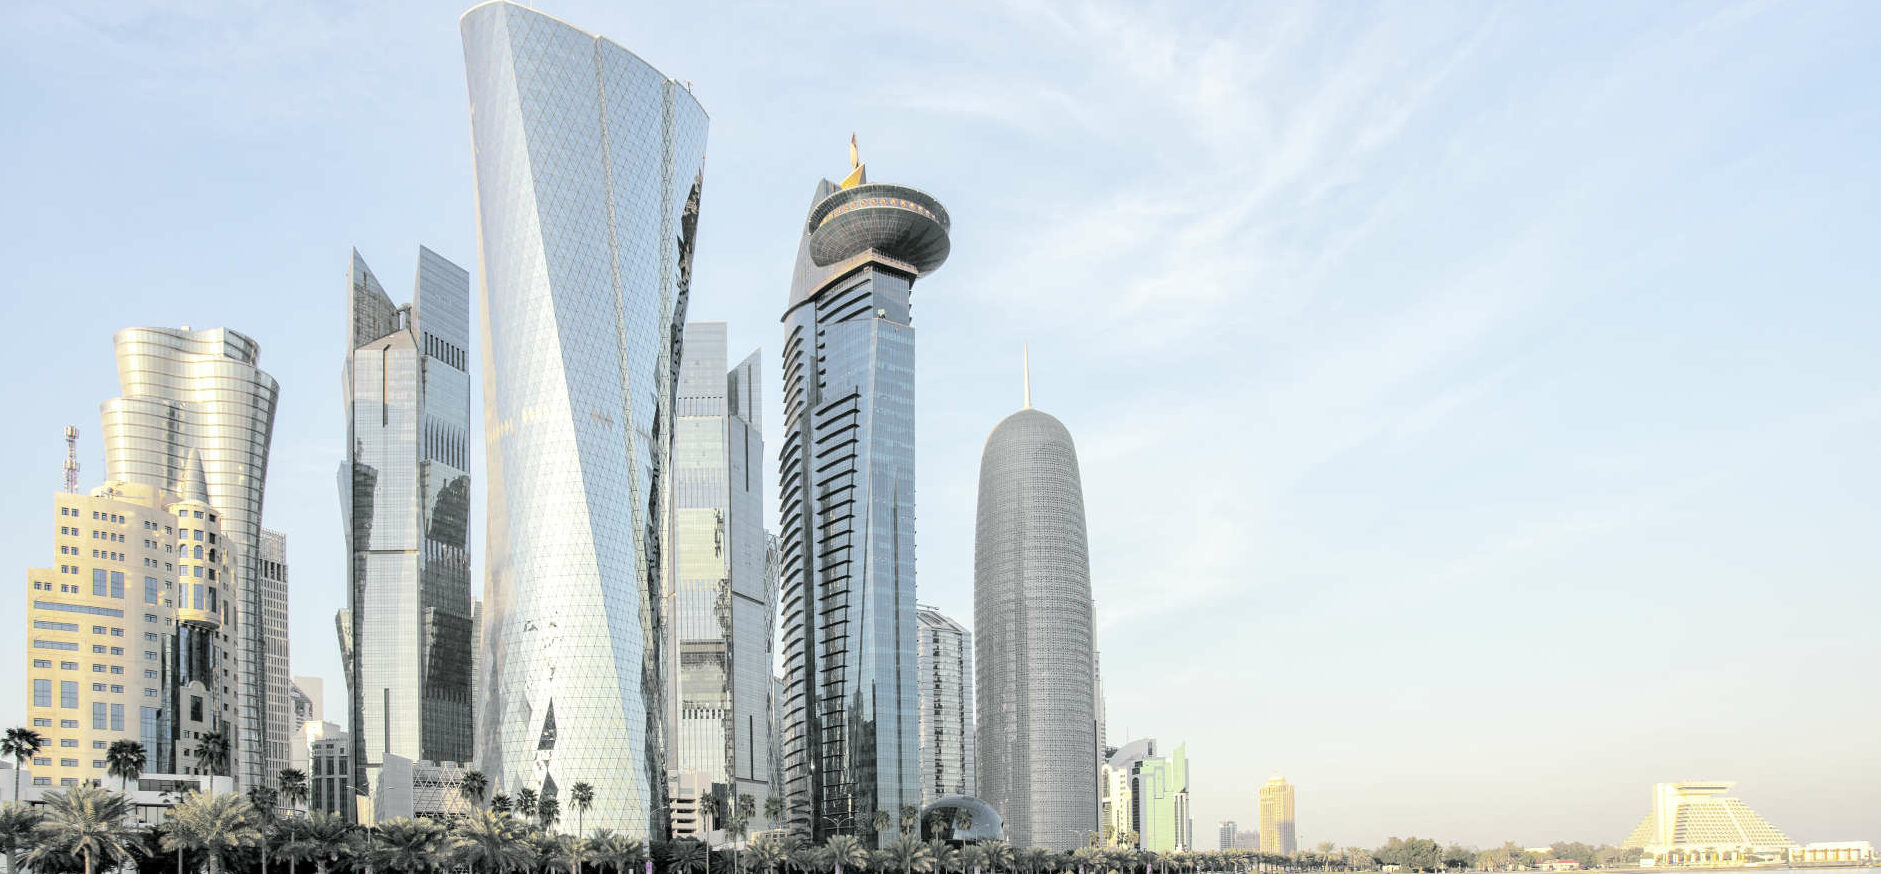 Die modernen Glitzerfassaden von Doha kaschieren einen Muslimbruder-Islam, der auch nach Europa exportiert wird.